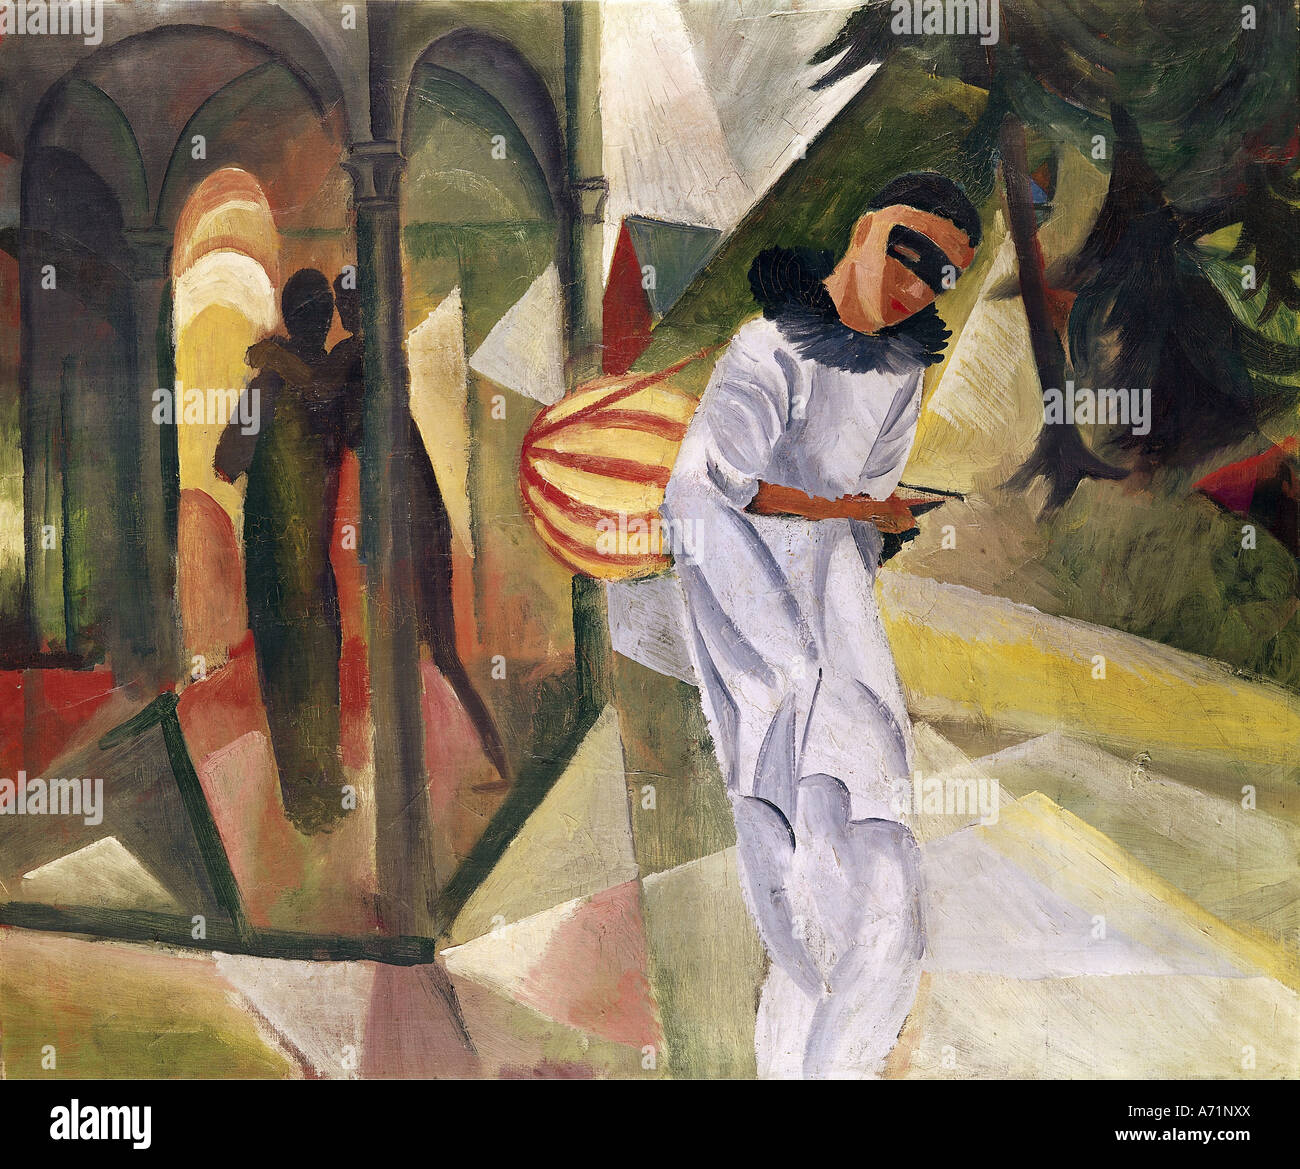 "Fine Arts, Macke, August (1887 – 1914), Malerei,"Pierrot", 1913, Öl auf Leinwand, 75 x 90 cm, Halle für Kunst, Bielefeld, Hallo Stockfoto